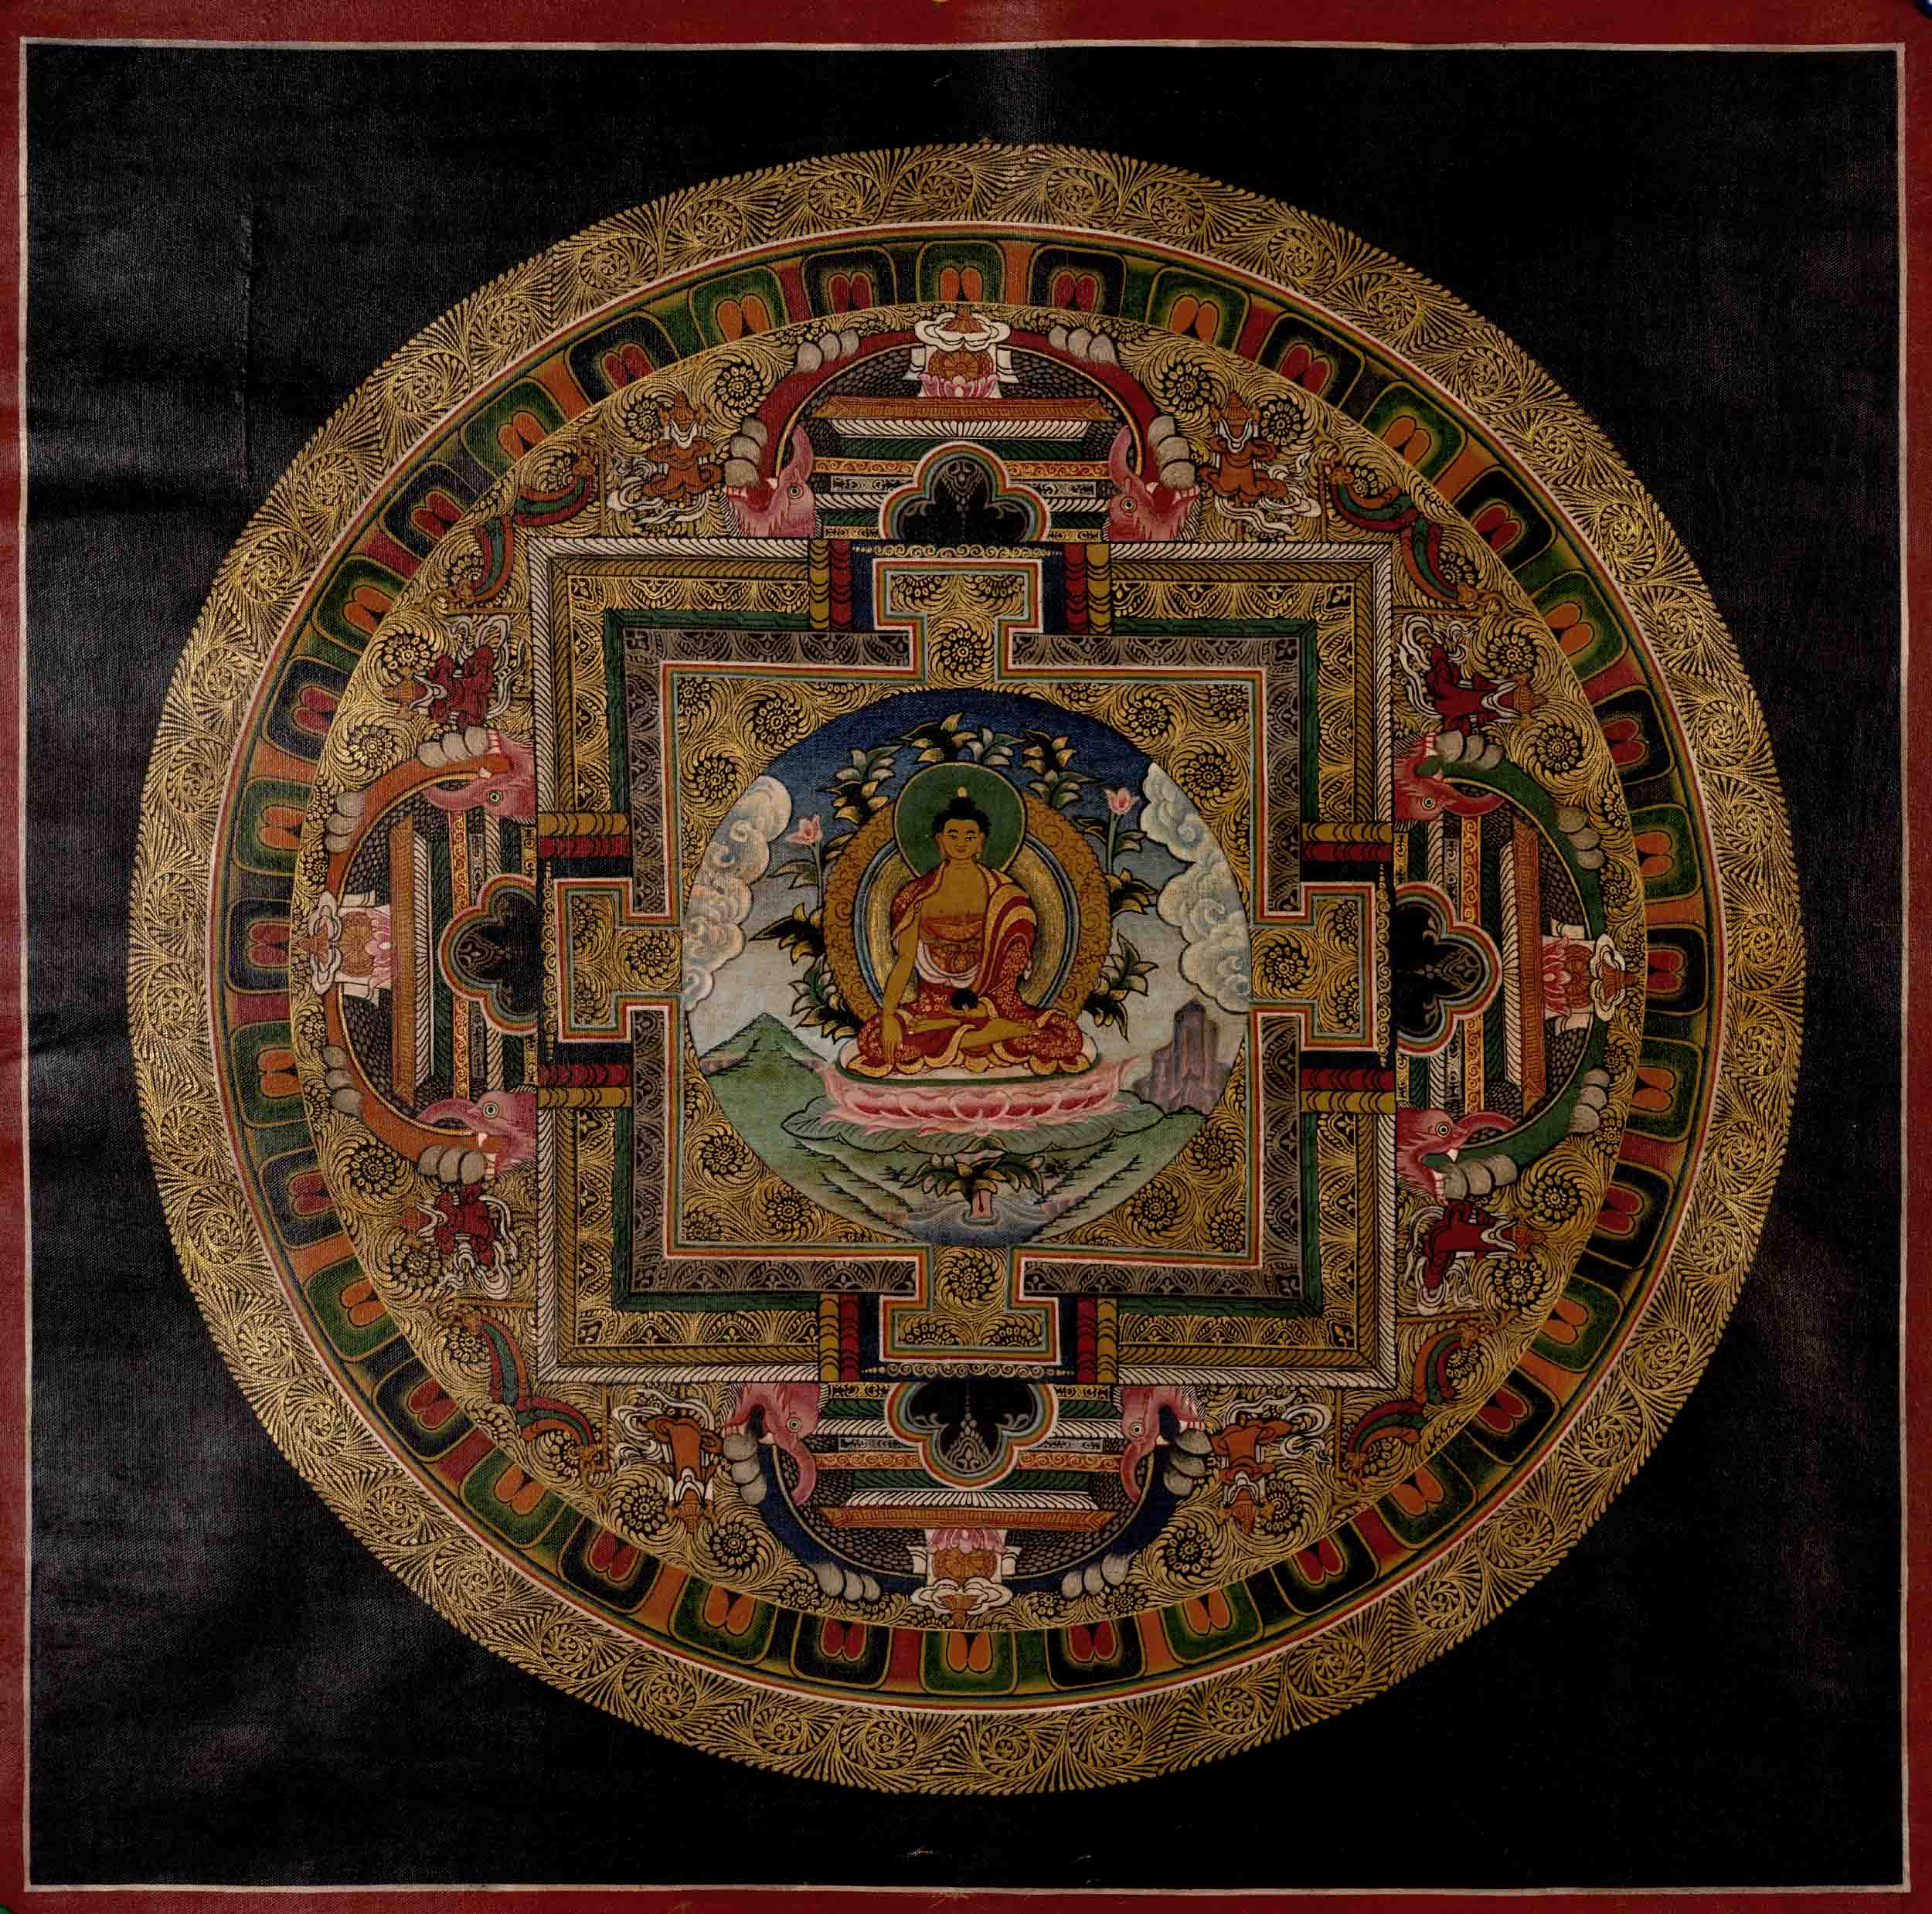 Shakyamuni Buddha Mandala | Buddha Shakyamuni Thangka | Wall Decoration Painting | Art Painting for Meditation and Good Luck to house